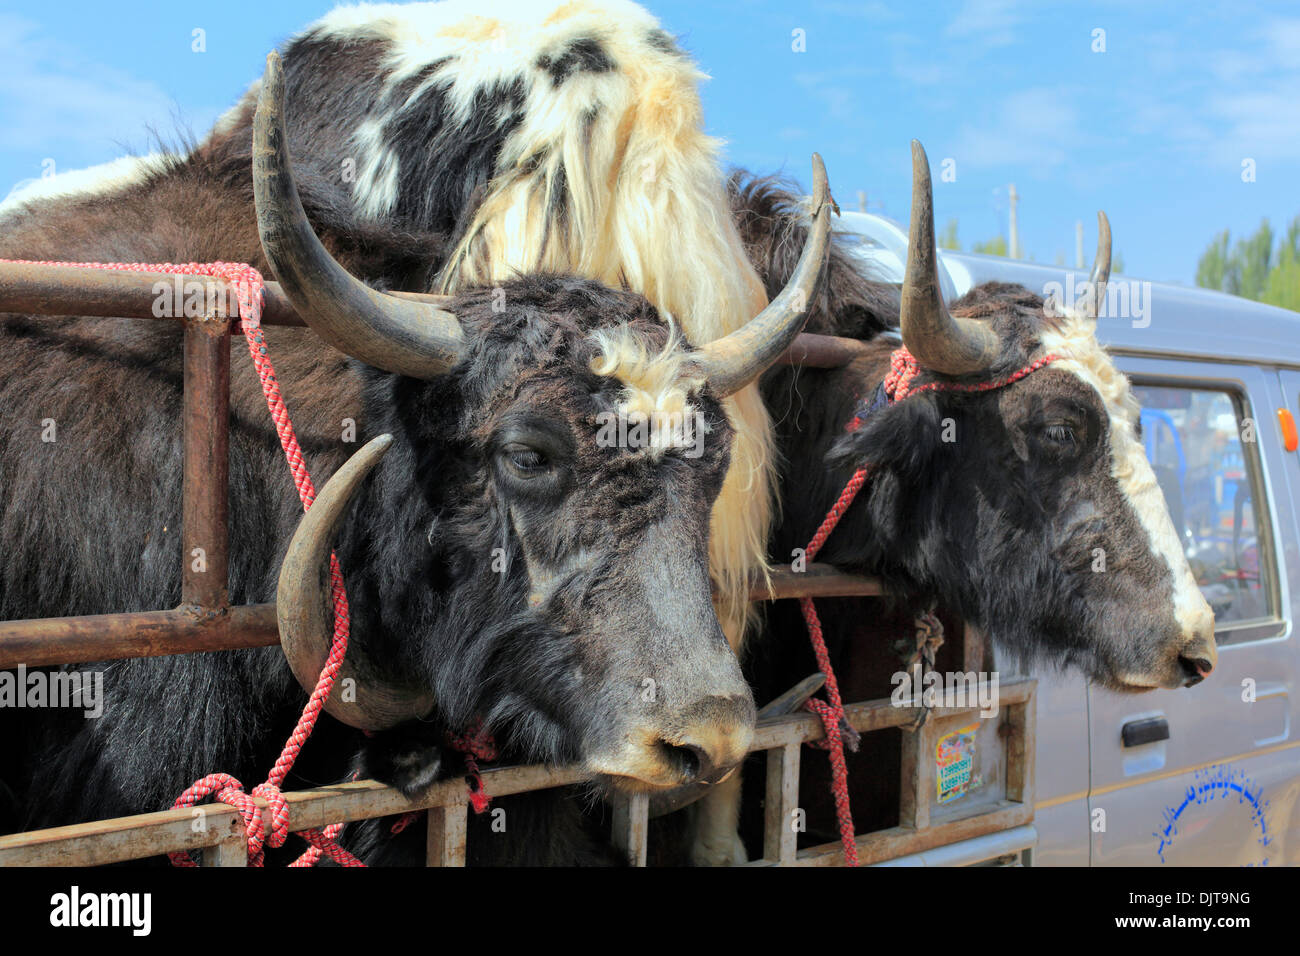 Mercato del Bestiame, Kashgar (Kashi), Kashgar Prefettura, Xinjiang Uyghur Regione autonoma, Cina Foto Stock